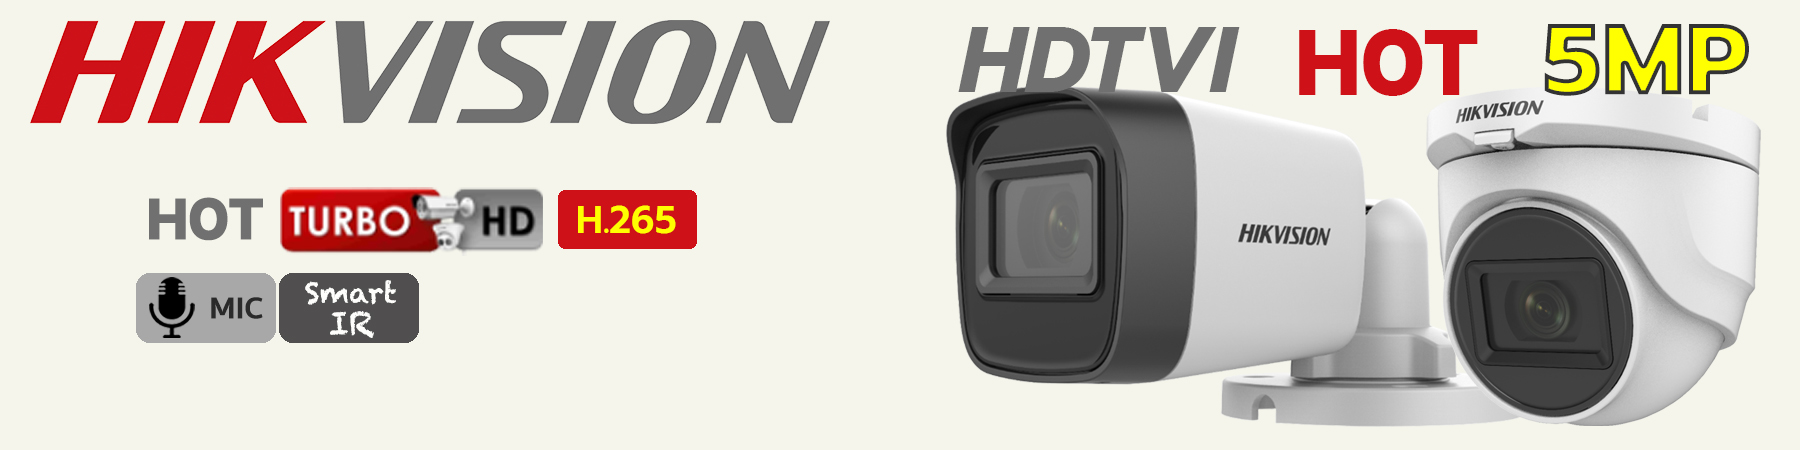 กล้องวงจรปิด Hikvision, กล้อง Hikvision, Smart IR, ไมค์บันทึกเสียง, DS-2CE16H0T-ITFS, DS-2CE76H0T-ITMFS